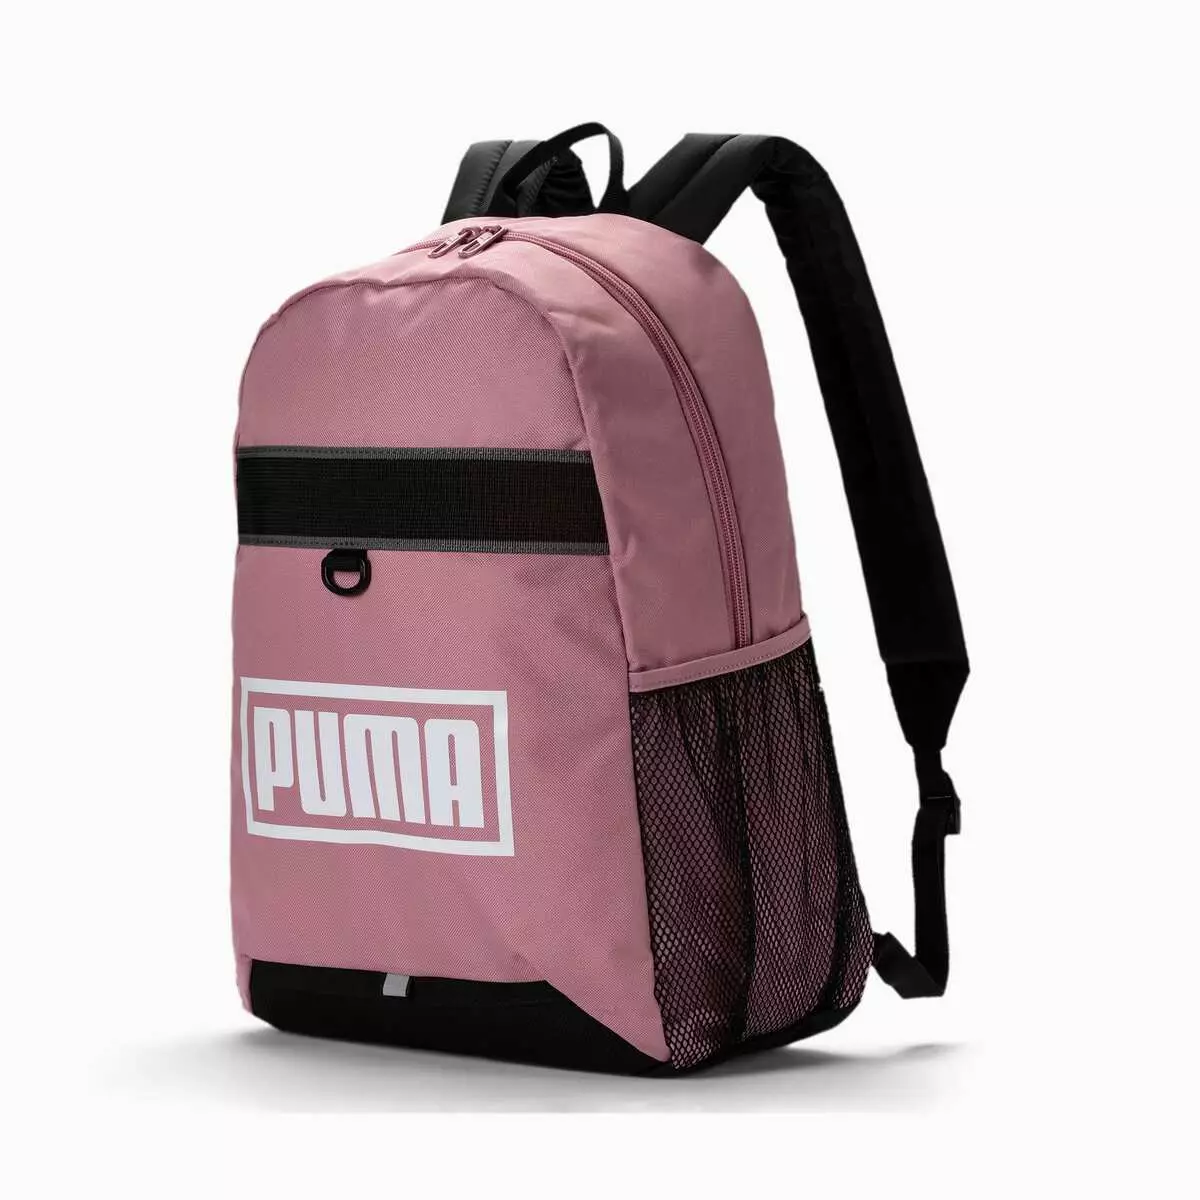 Puma Backpacks: ქალი და მამაკაცის, შავი, ვარდისფერი, ტყავის სპორტული, მრგვალი და სხვა ორიგინალური მოდელები. როგორ დაიბანეთ ეს უფლება? 15396_15